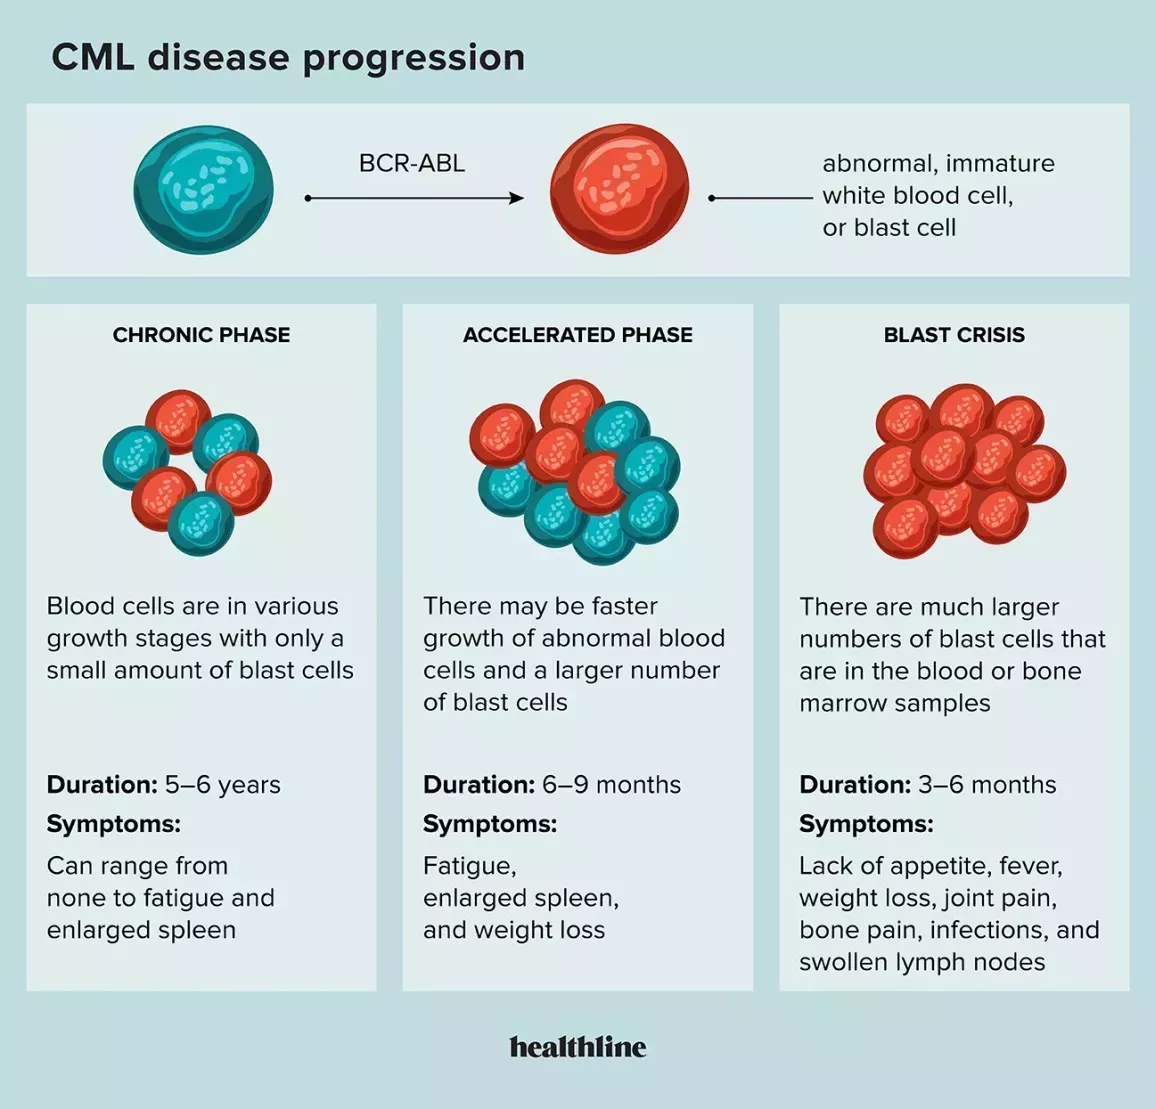 Disease progression in chronic myeloid leukemia (CML)